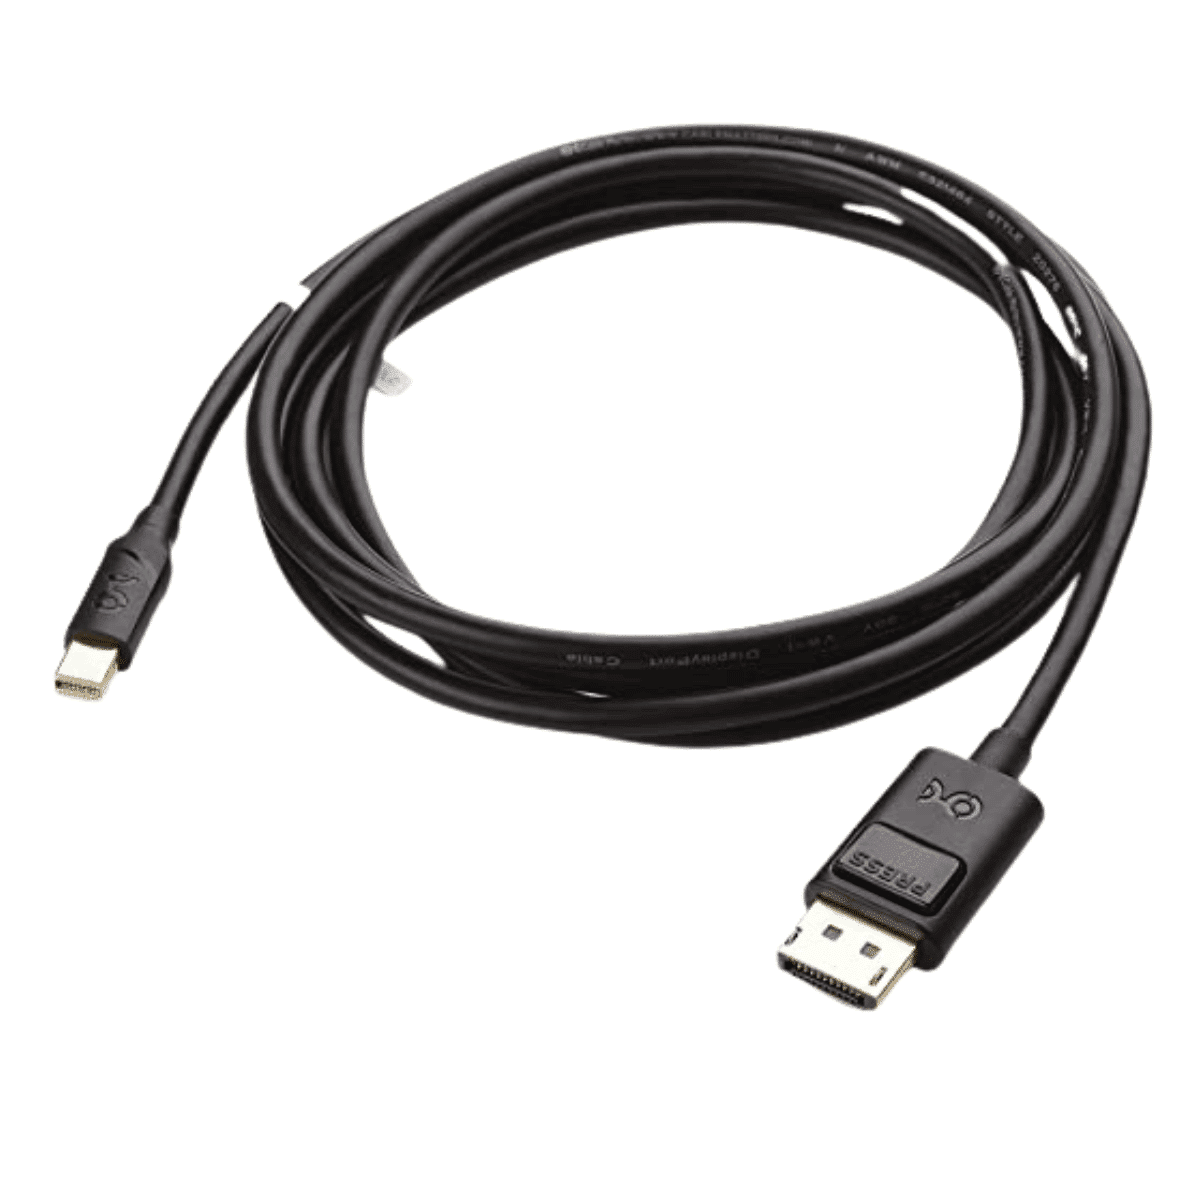 Cable Mini DisplayPort a DisplayPort Cable Matters 1.8 Mt, 4K a 60 Hz - 1440p a 165 Hz - 1080p a 240 Hz - Lapshop Chile